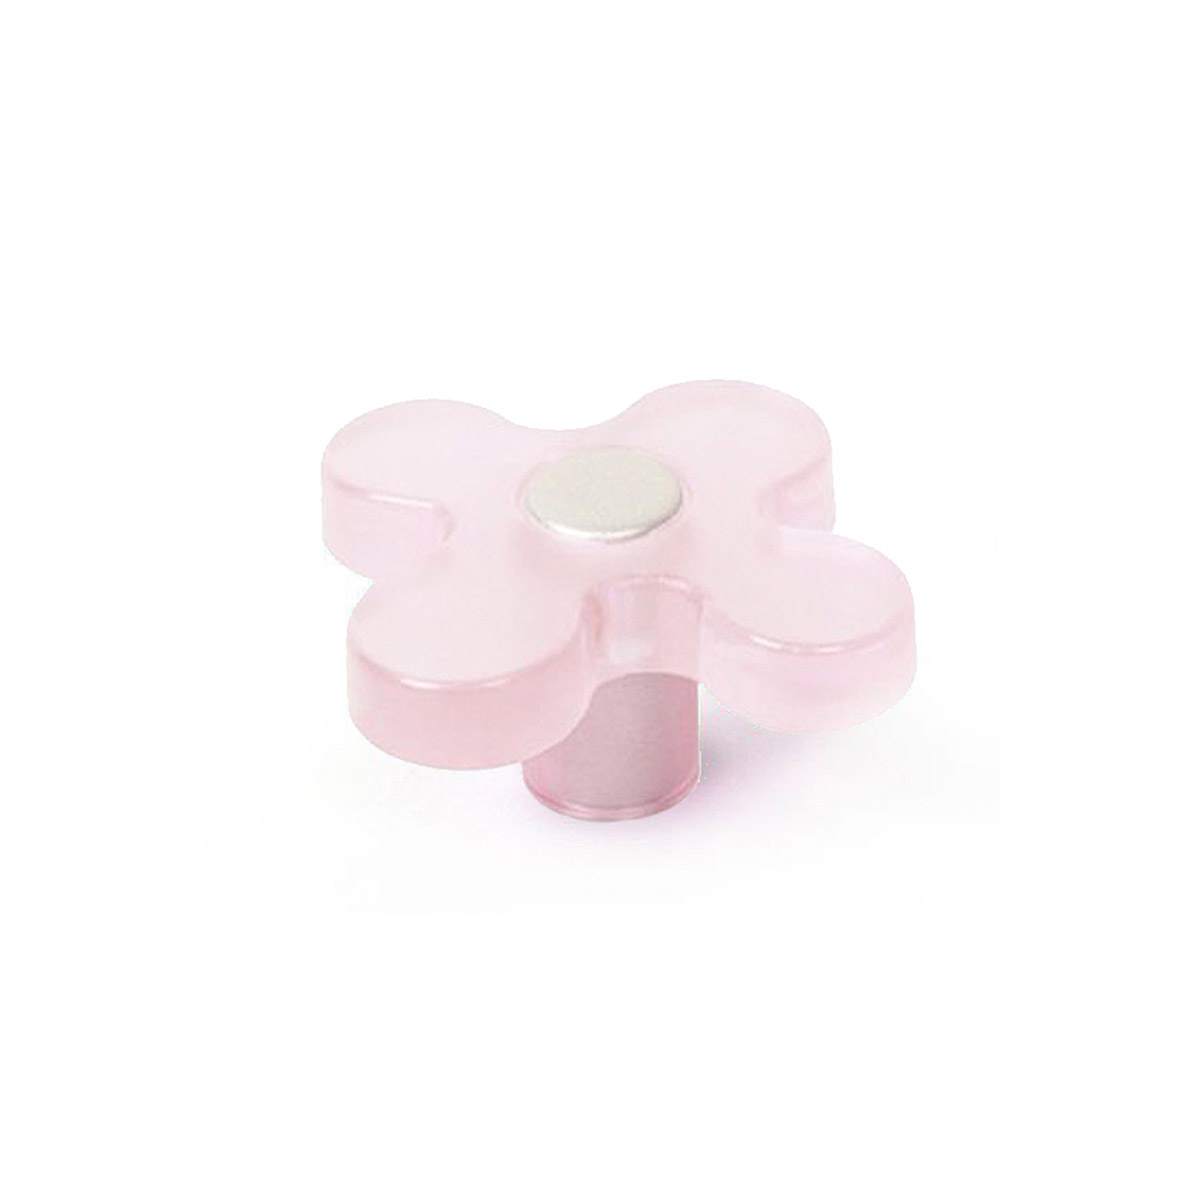 Pomo de plástico con acabado rosa claro, dimensiones: 49x49x26mm Ø: 49mm